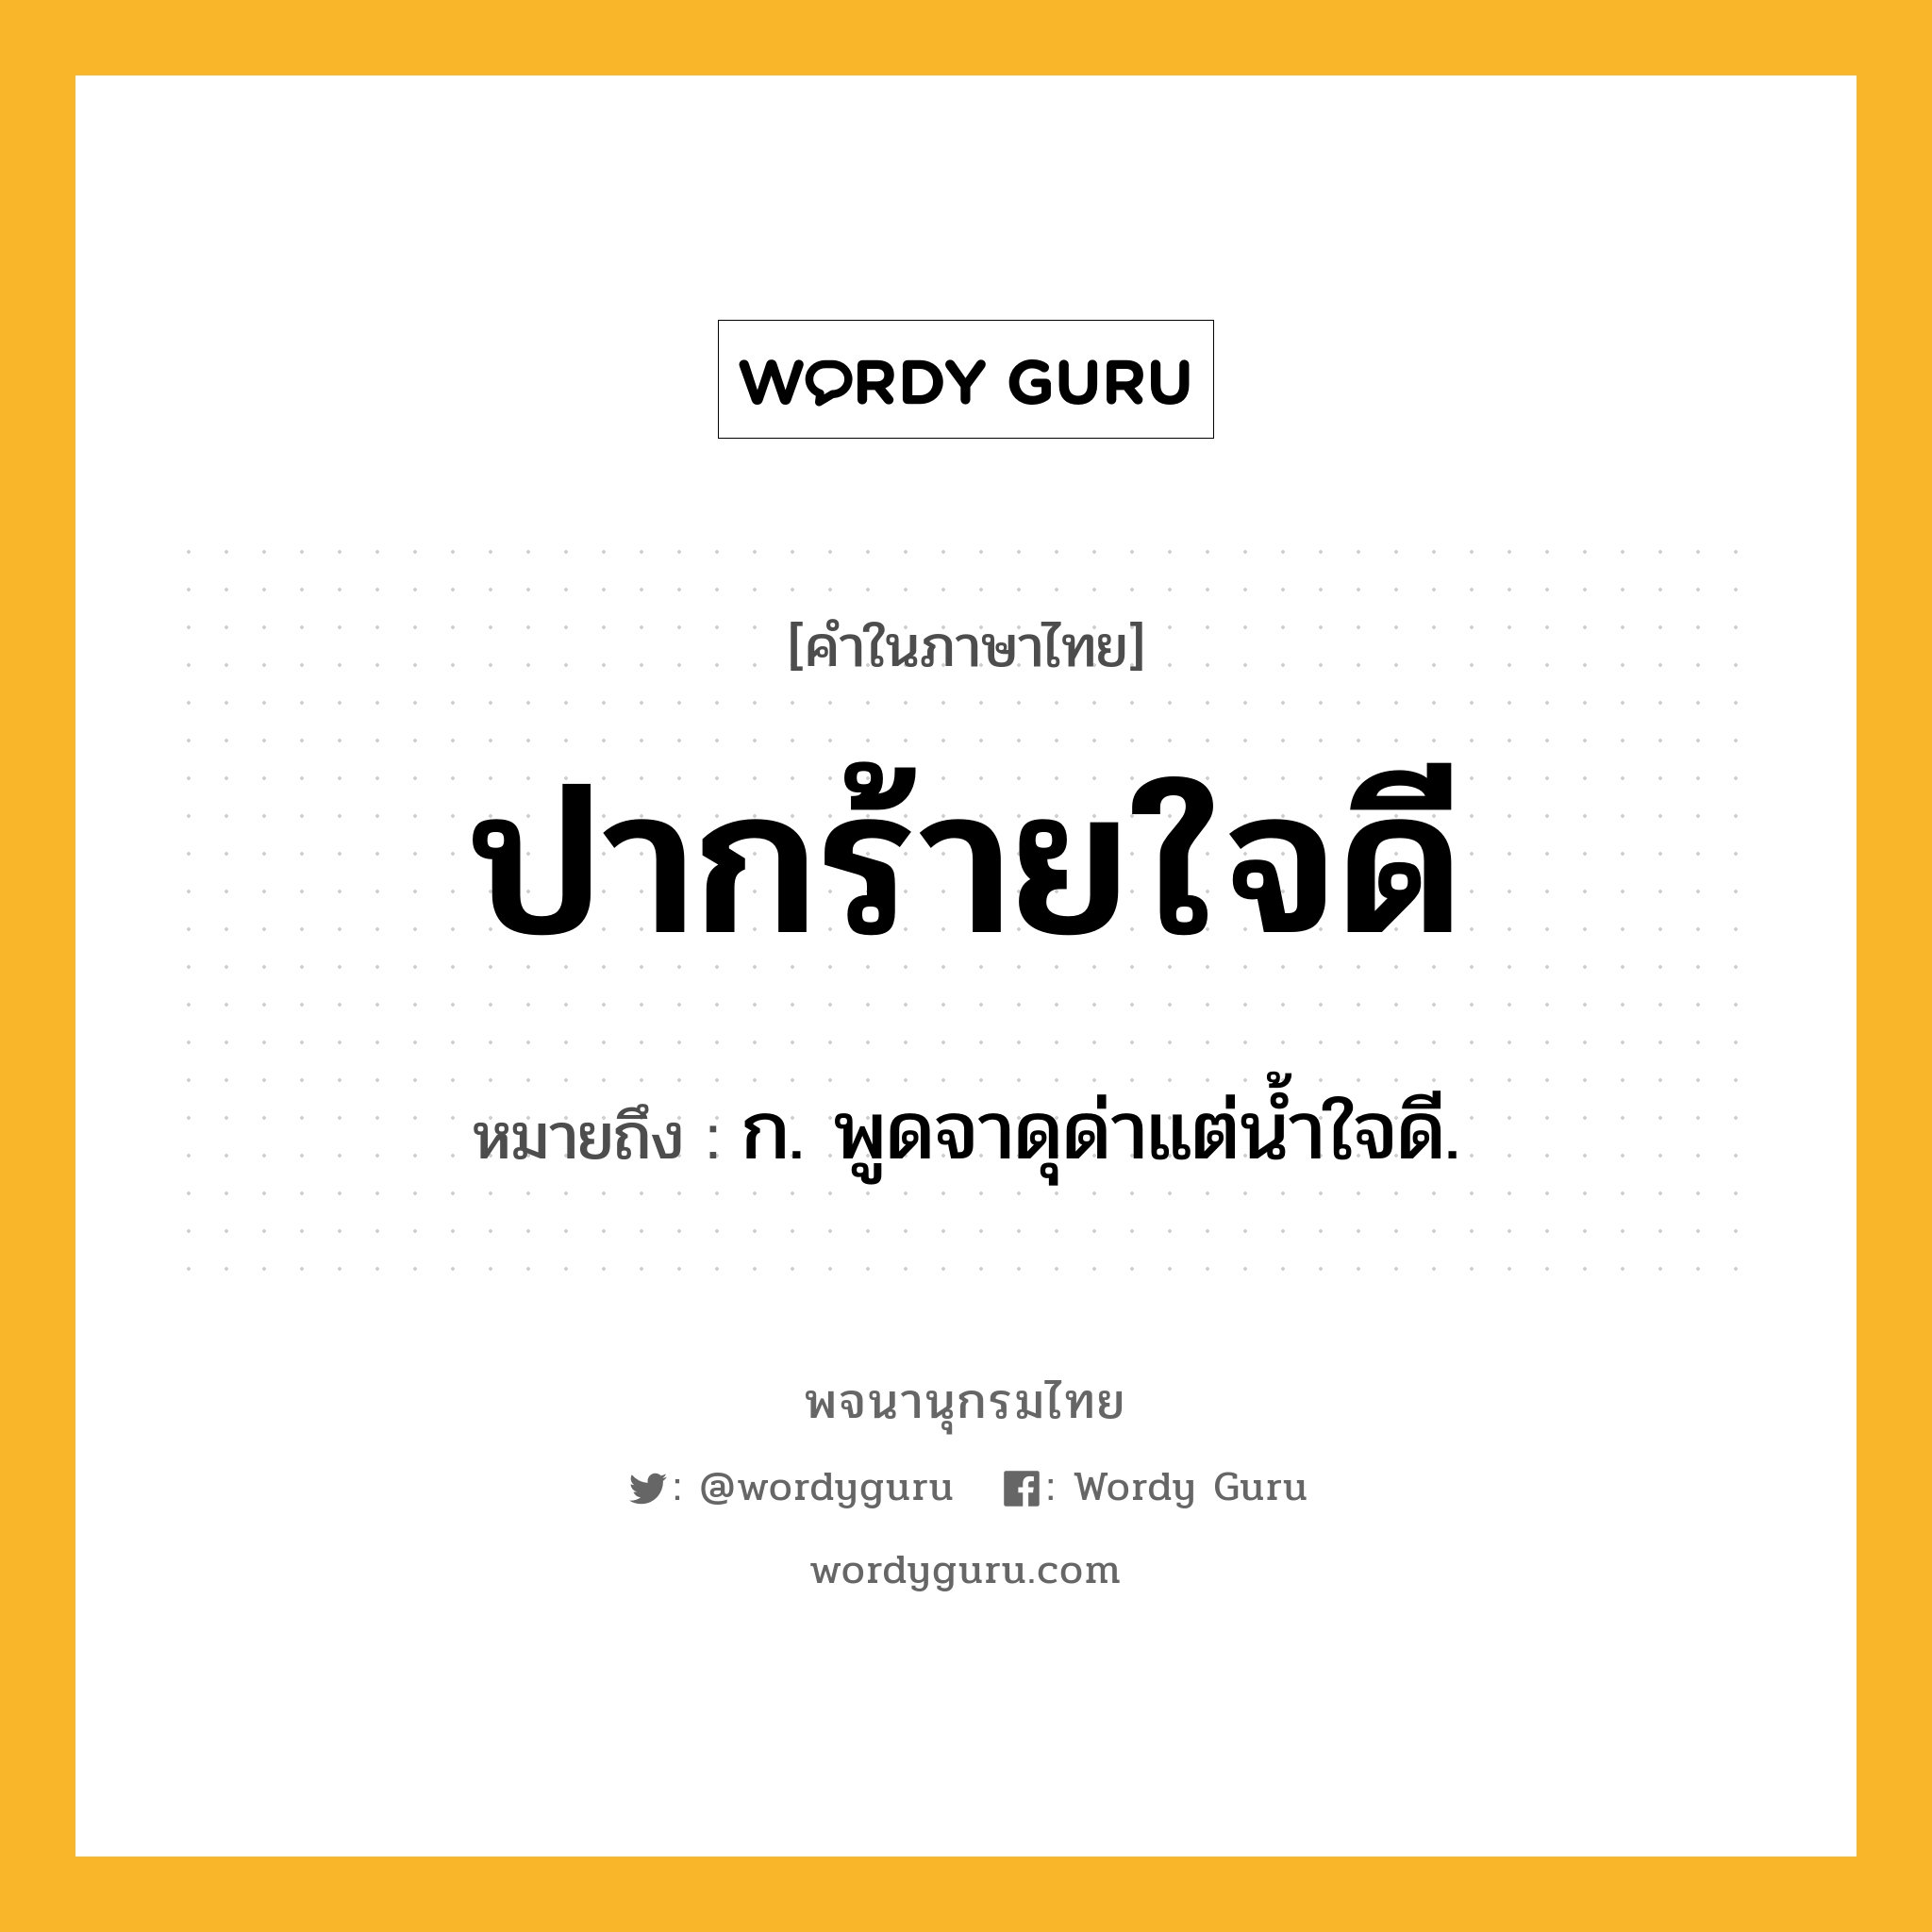 ปากร้ายใจดี หมายถึงอะไร?, คำในภาษาไทย ปากร้ายใจดี หมายถึง ก. พูดจาดุด่าแต่น้ำใจดี.